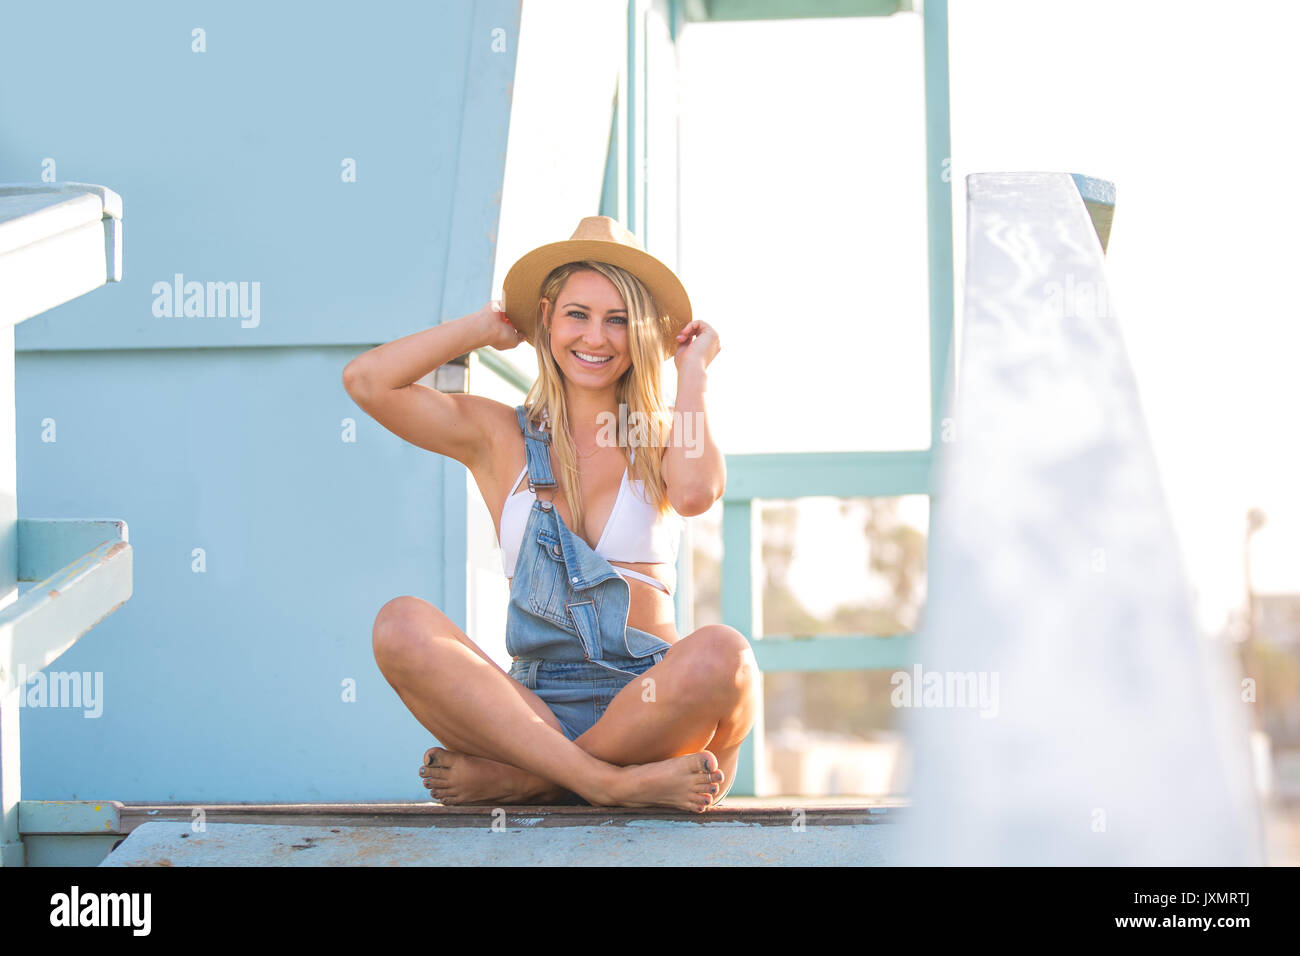 Porträt der jungen Frau gekreuzt auf Beach Hut legged, Santa Monica, Kalifornien, USA Stockfoto